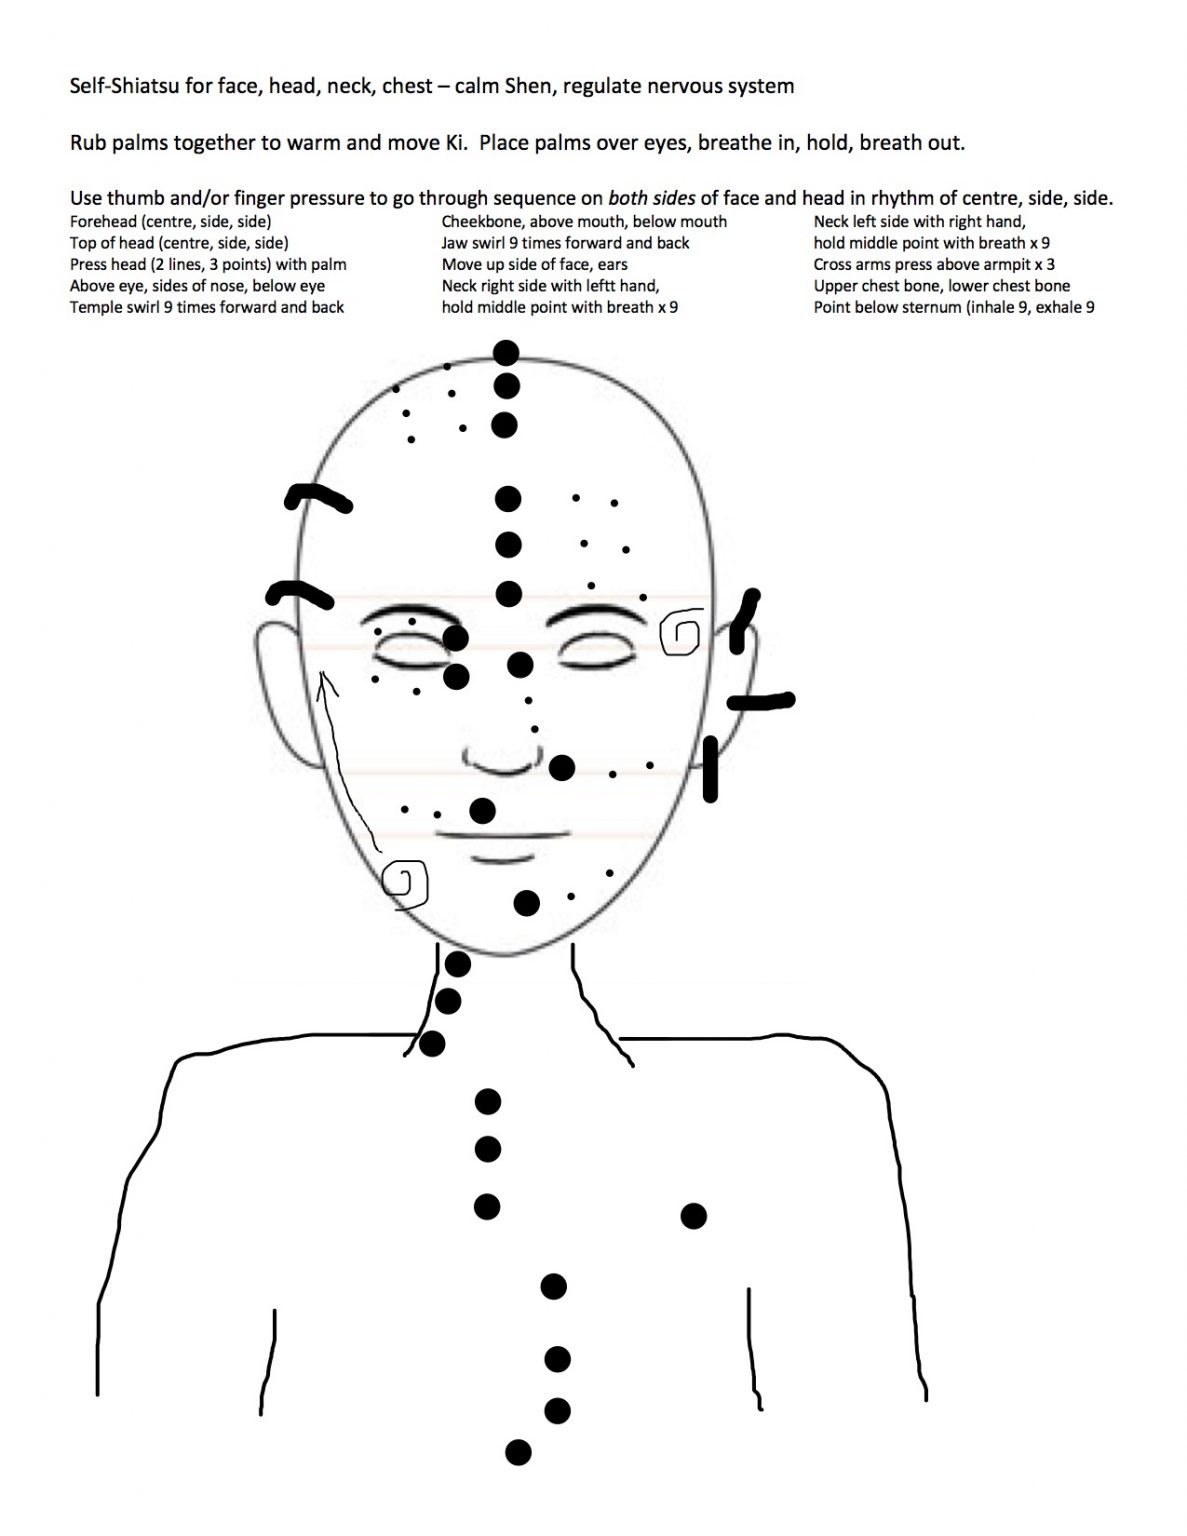 How To Do Self Shiatsu Massage To Destress Aurum Medicine And Wellness Clinic 5128